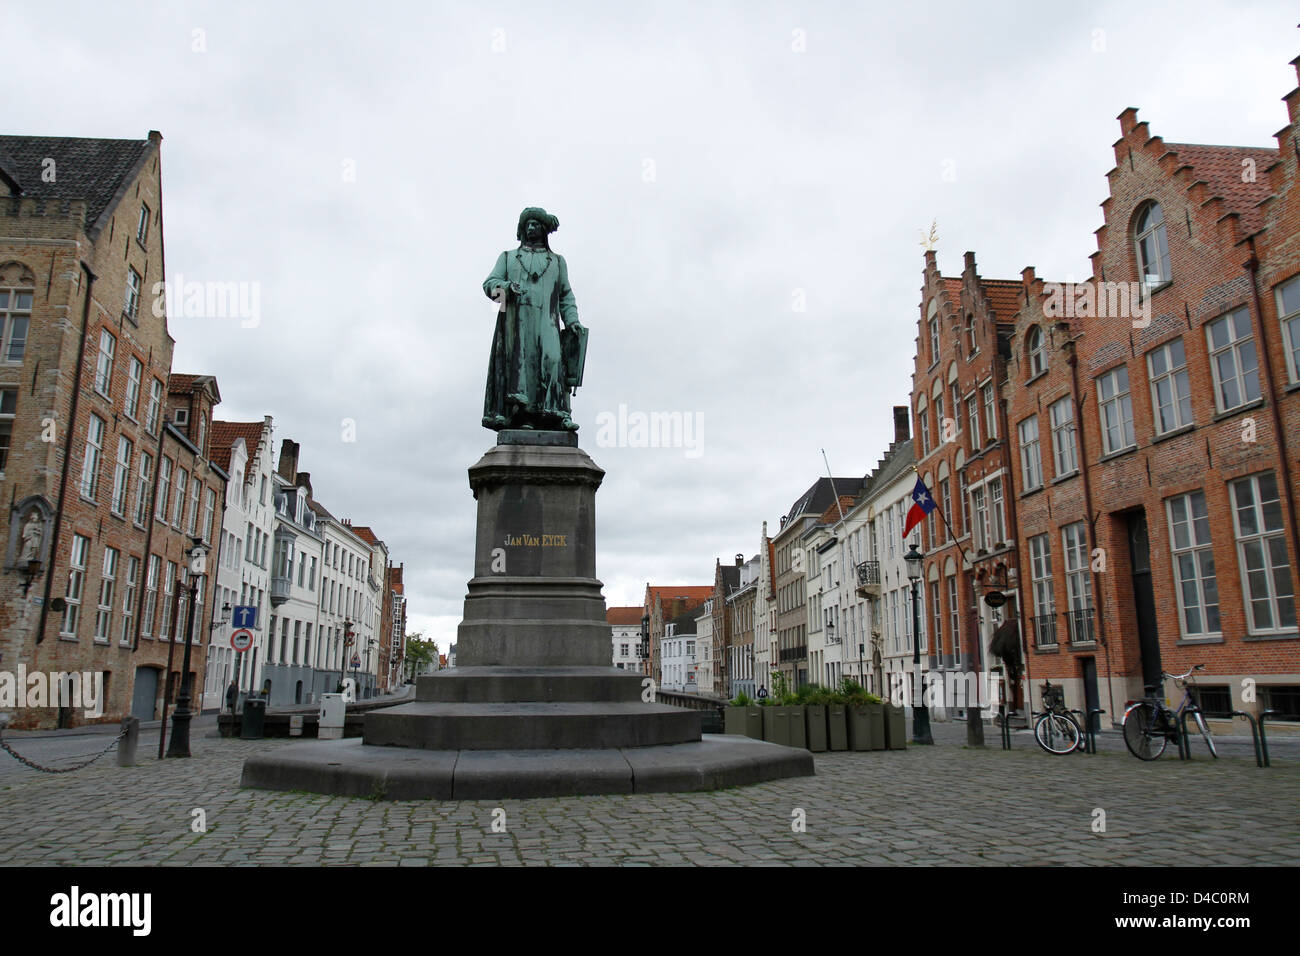 Travel images from Brugge, Belgium - Jan Van Eyck statue Stock Photo